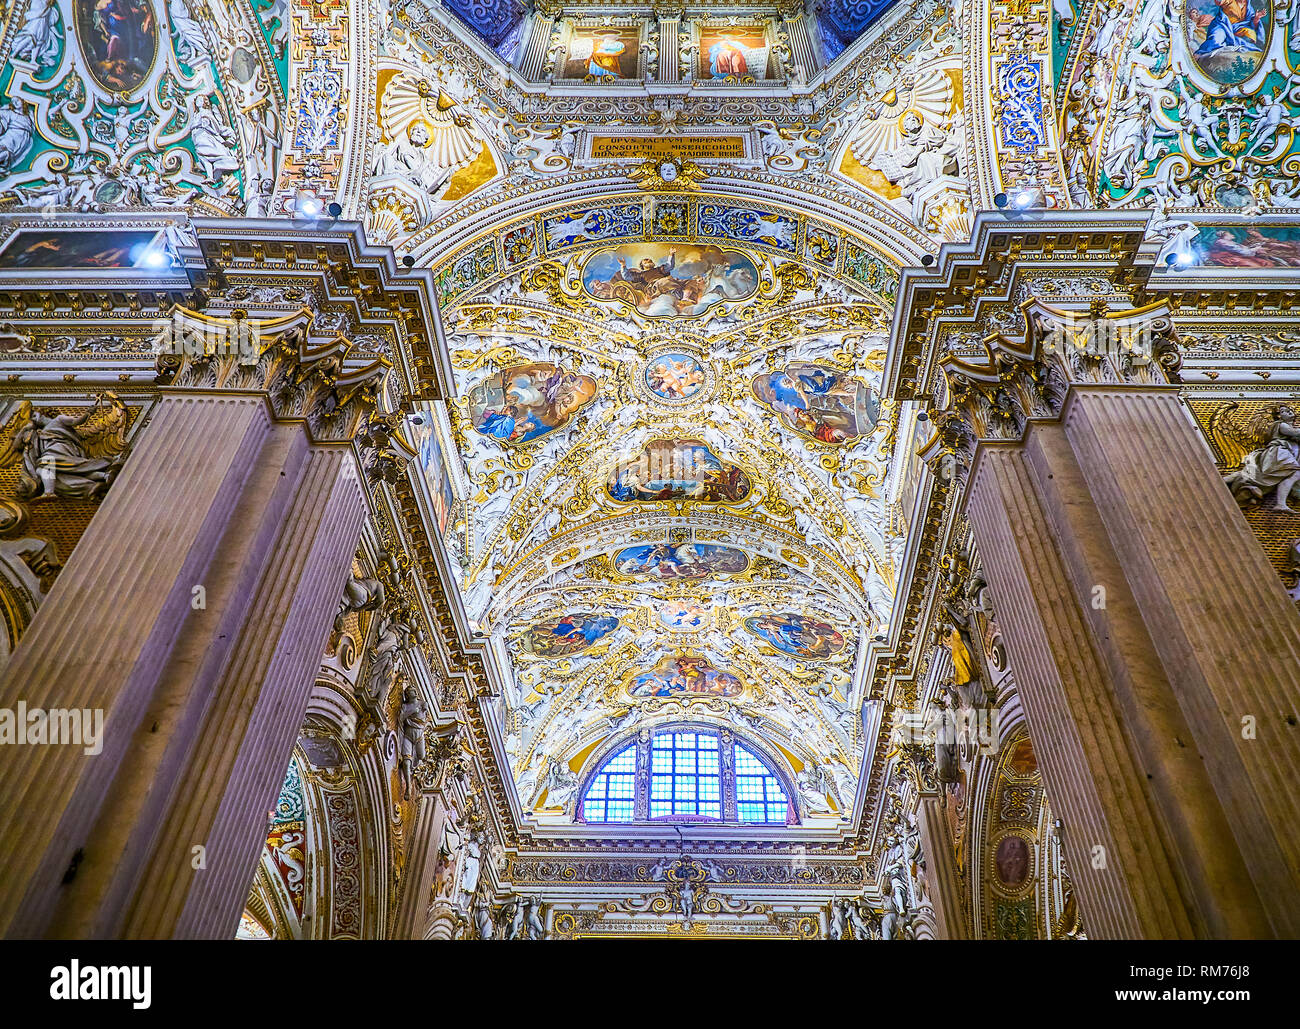 Ceiling detail of the Nave of The Basilica di Santa Maria Maggiore. Piazza del Duomo, Citta Alta, Citta Alta, Bergamo, Lombardy, Italy. Stock Photo